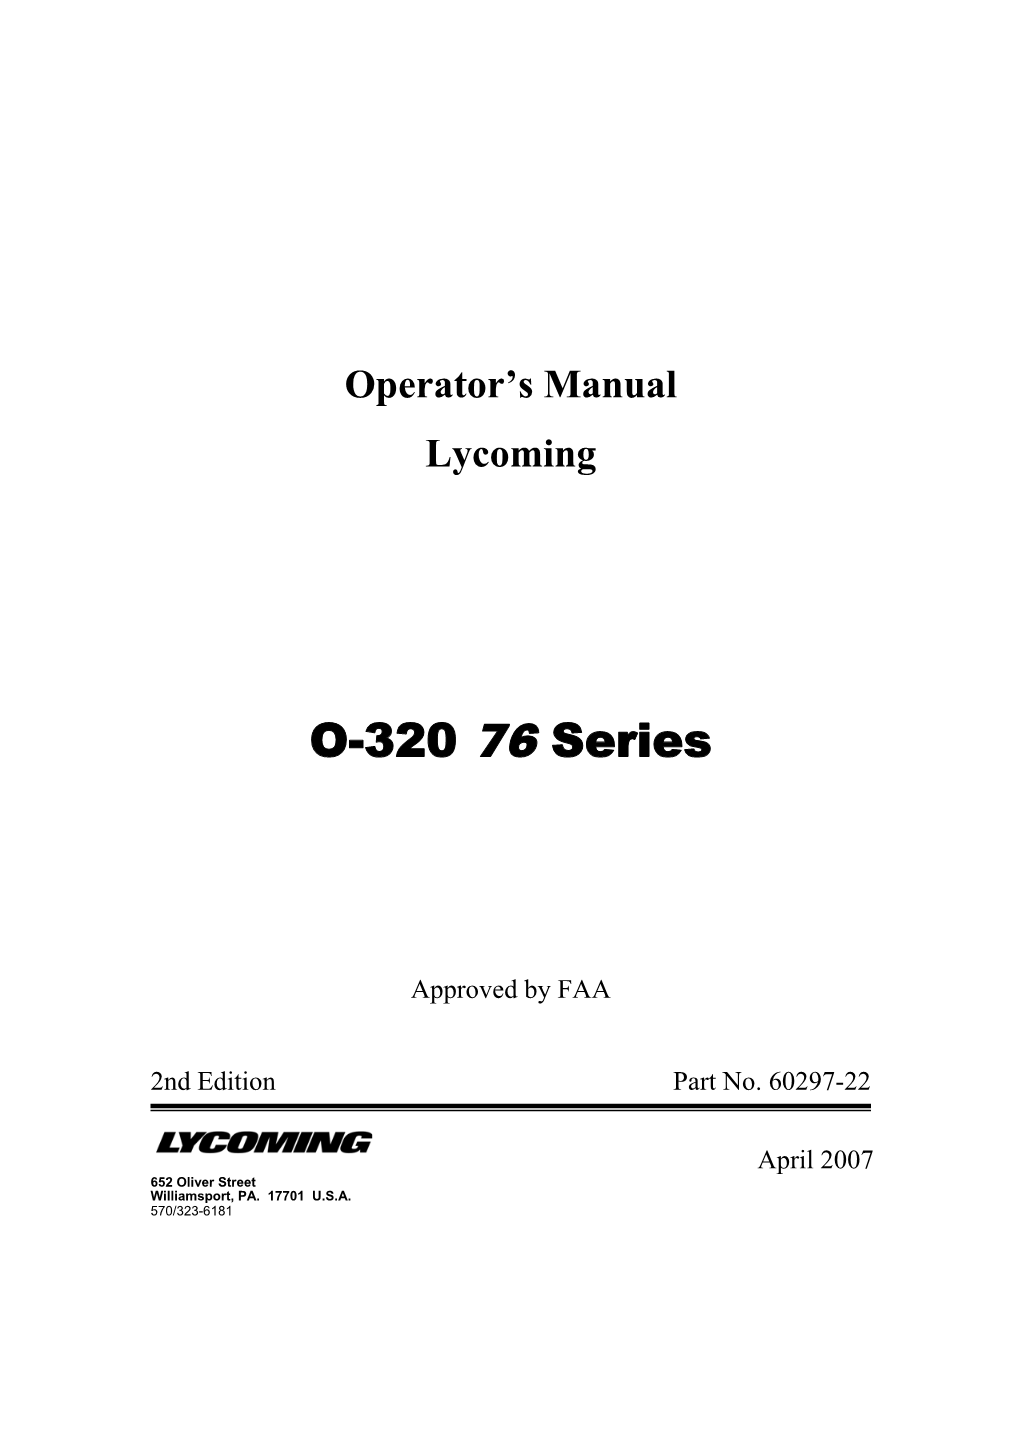 O-320 87 Series